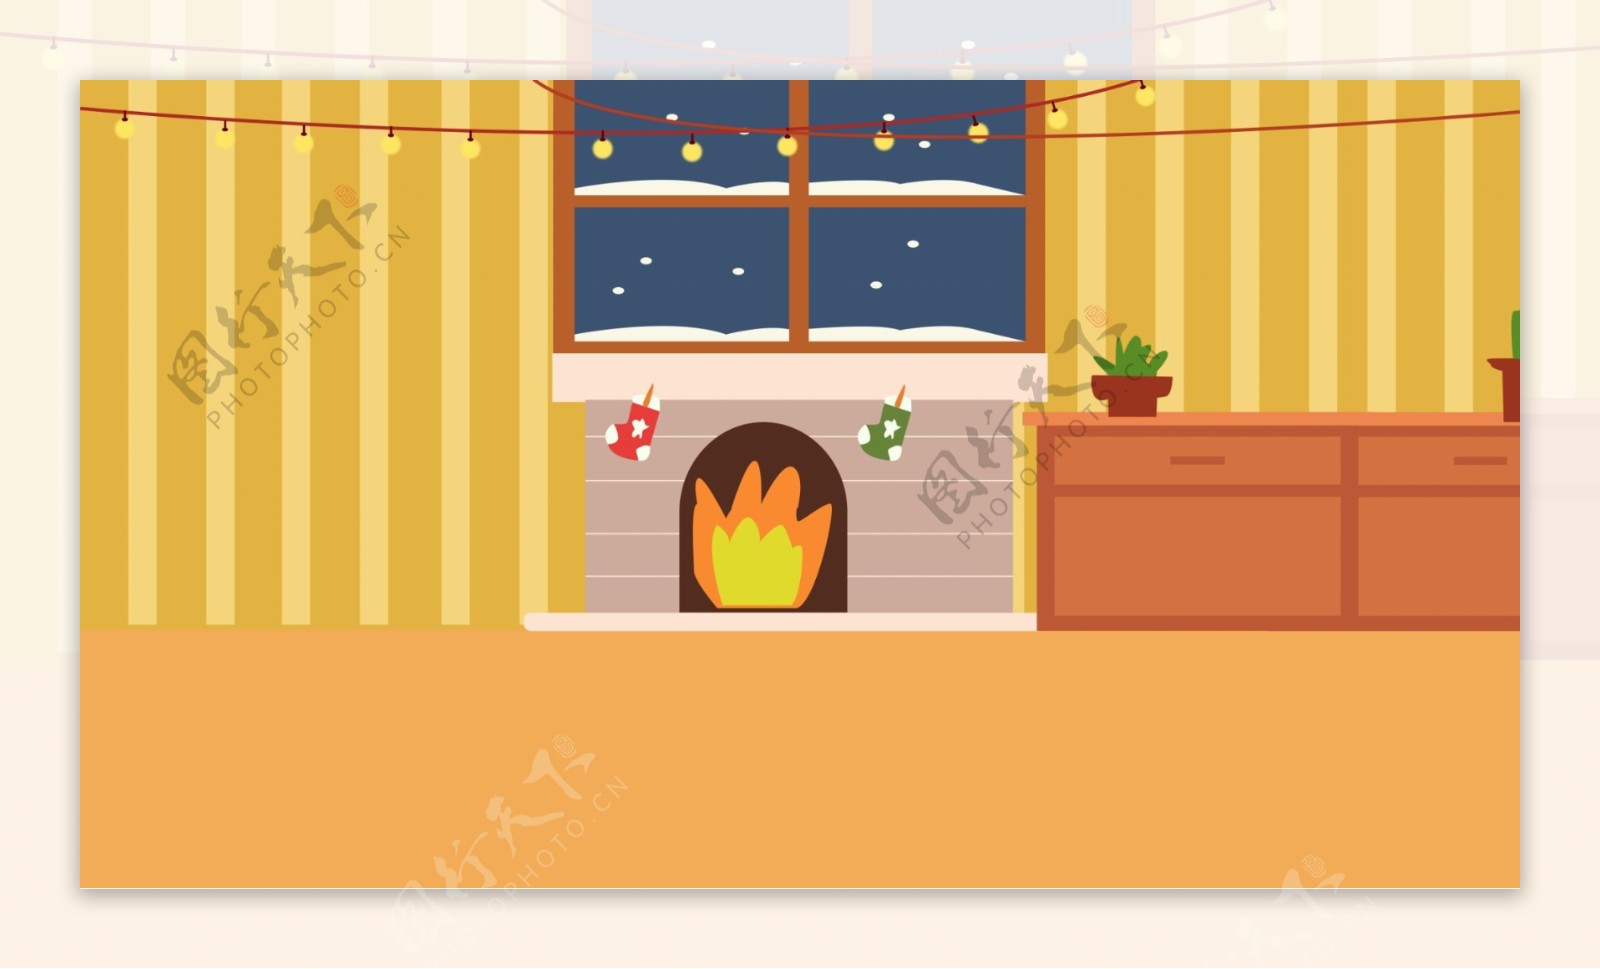 手绘西方节日圣诞节室内壁炉背景素材